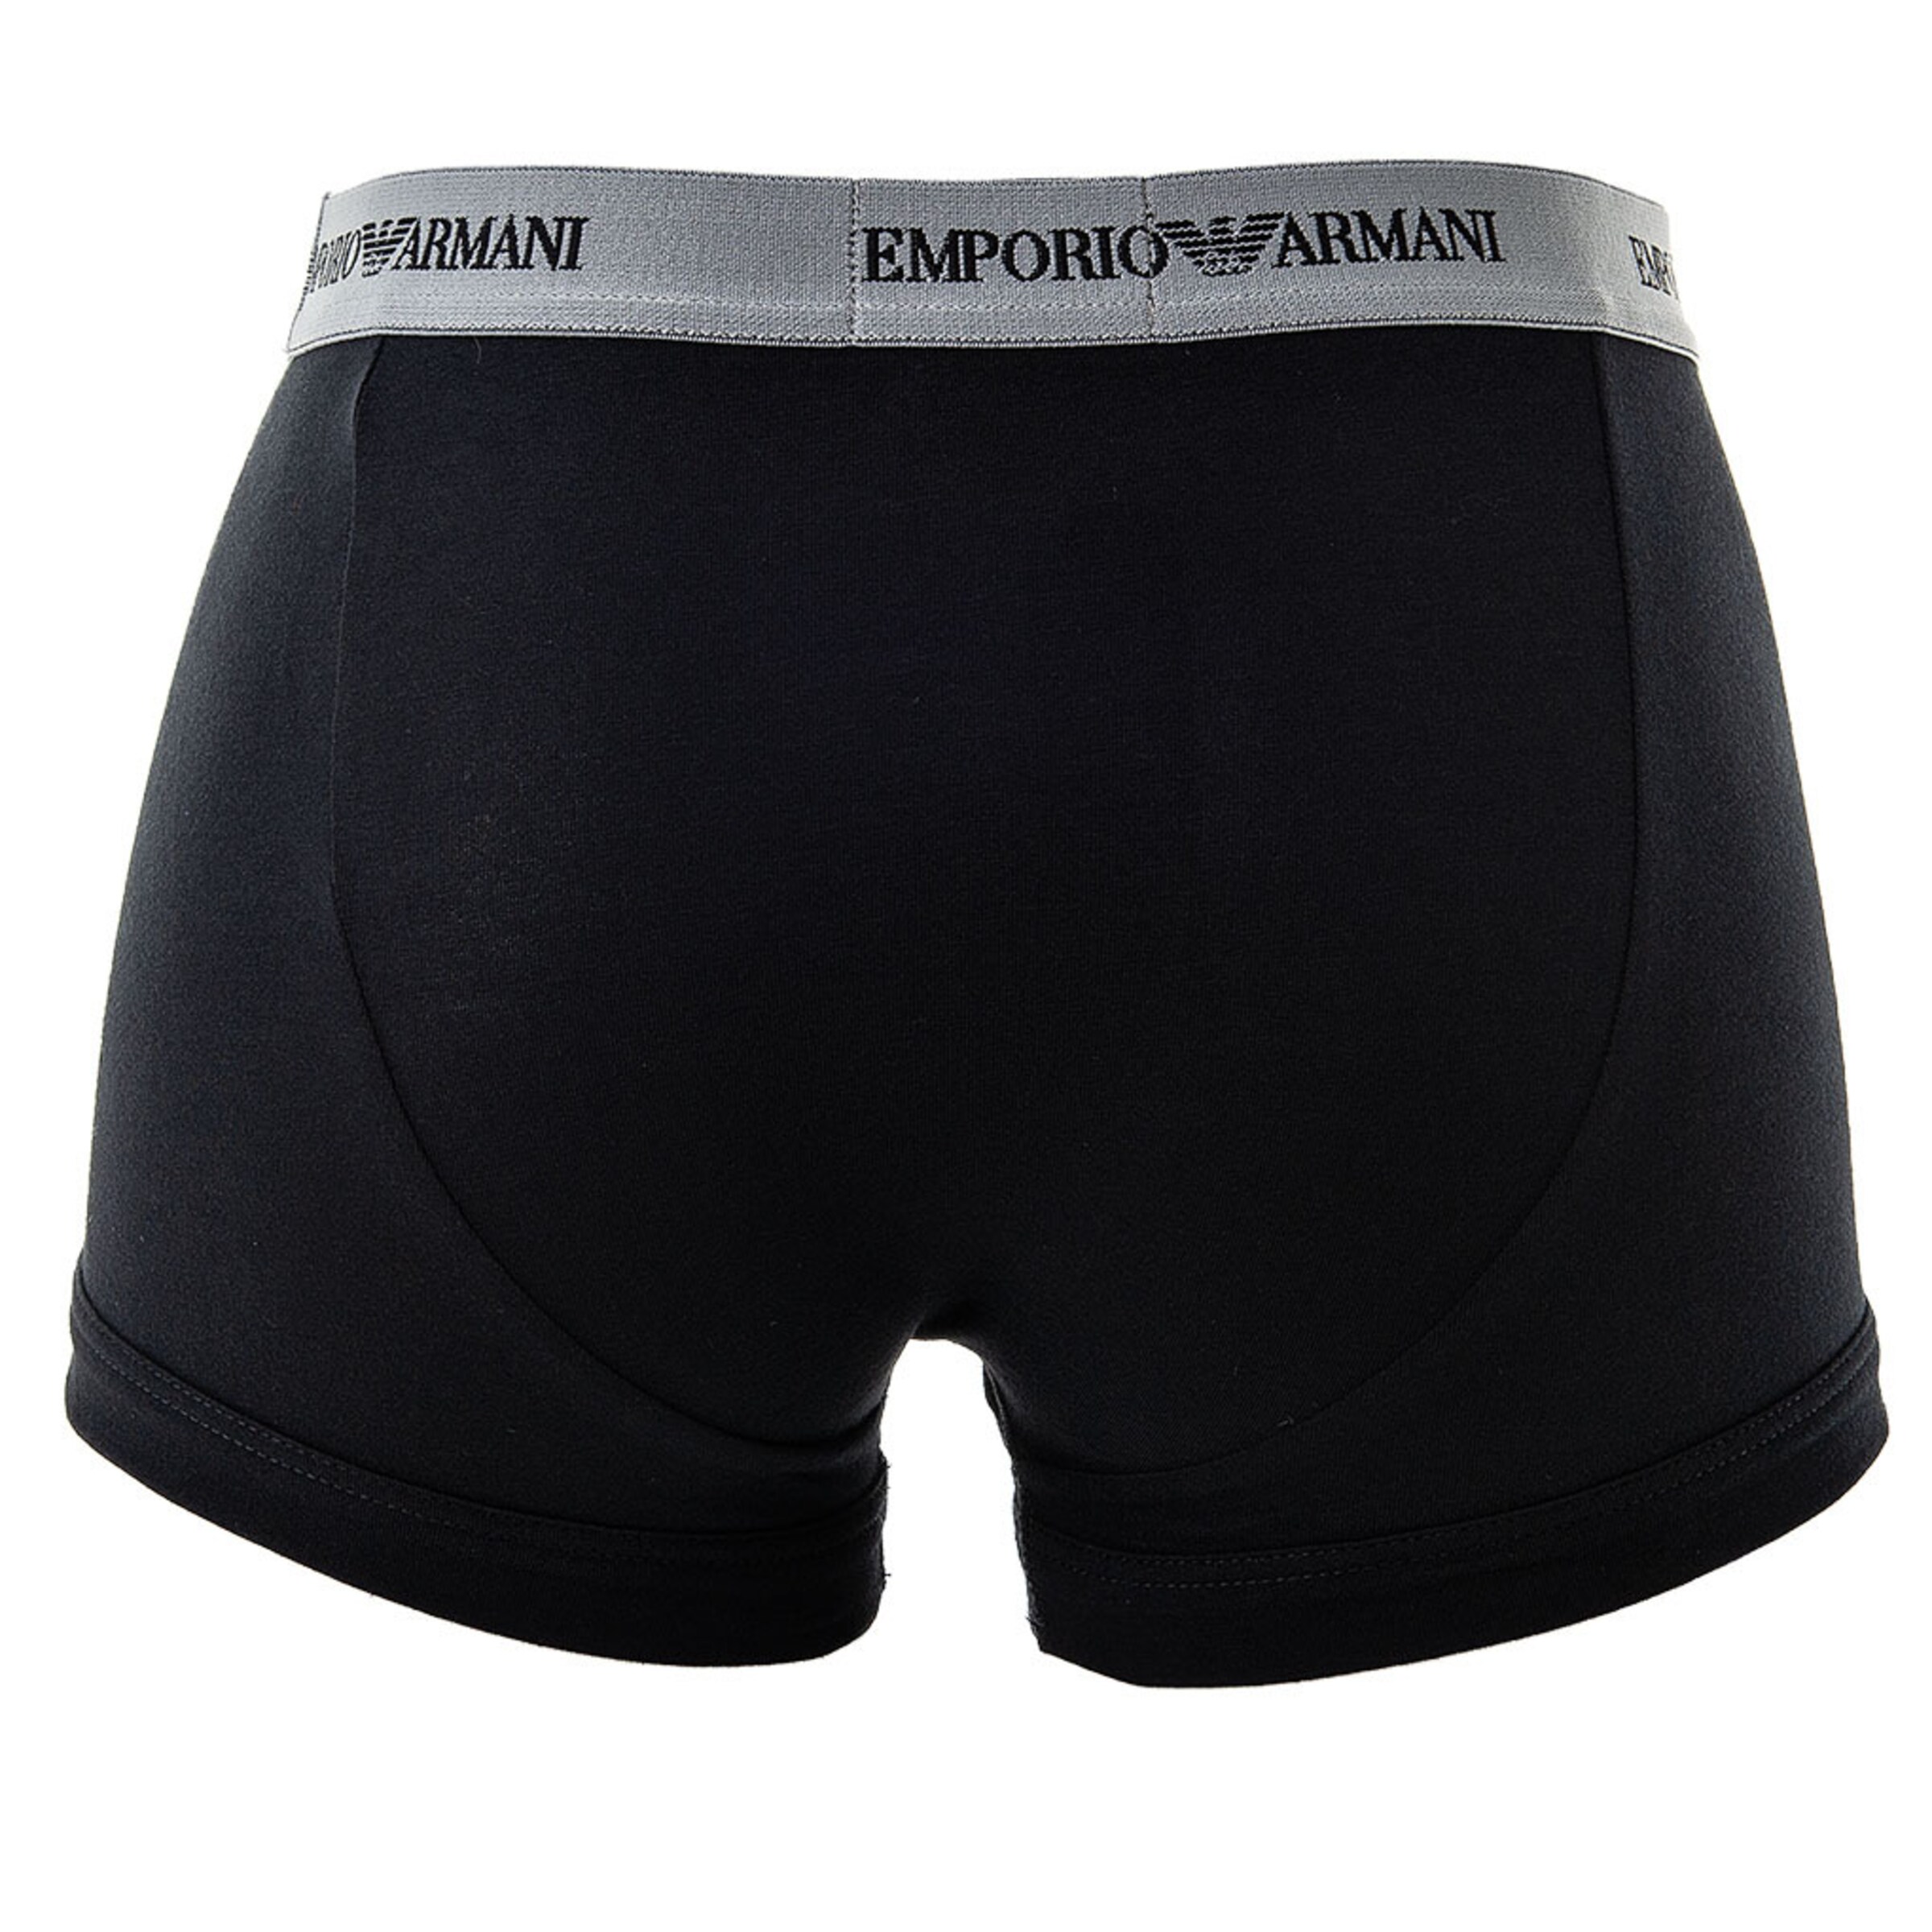 Männer Wäsche Emporio Armani Boxershorts in Mischfarben - RN52607